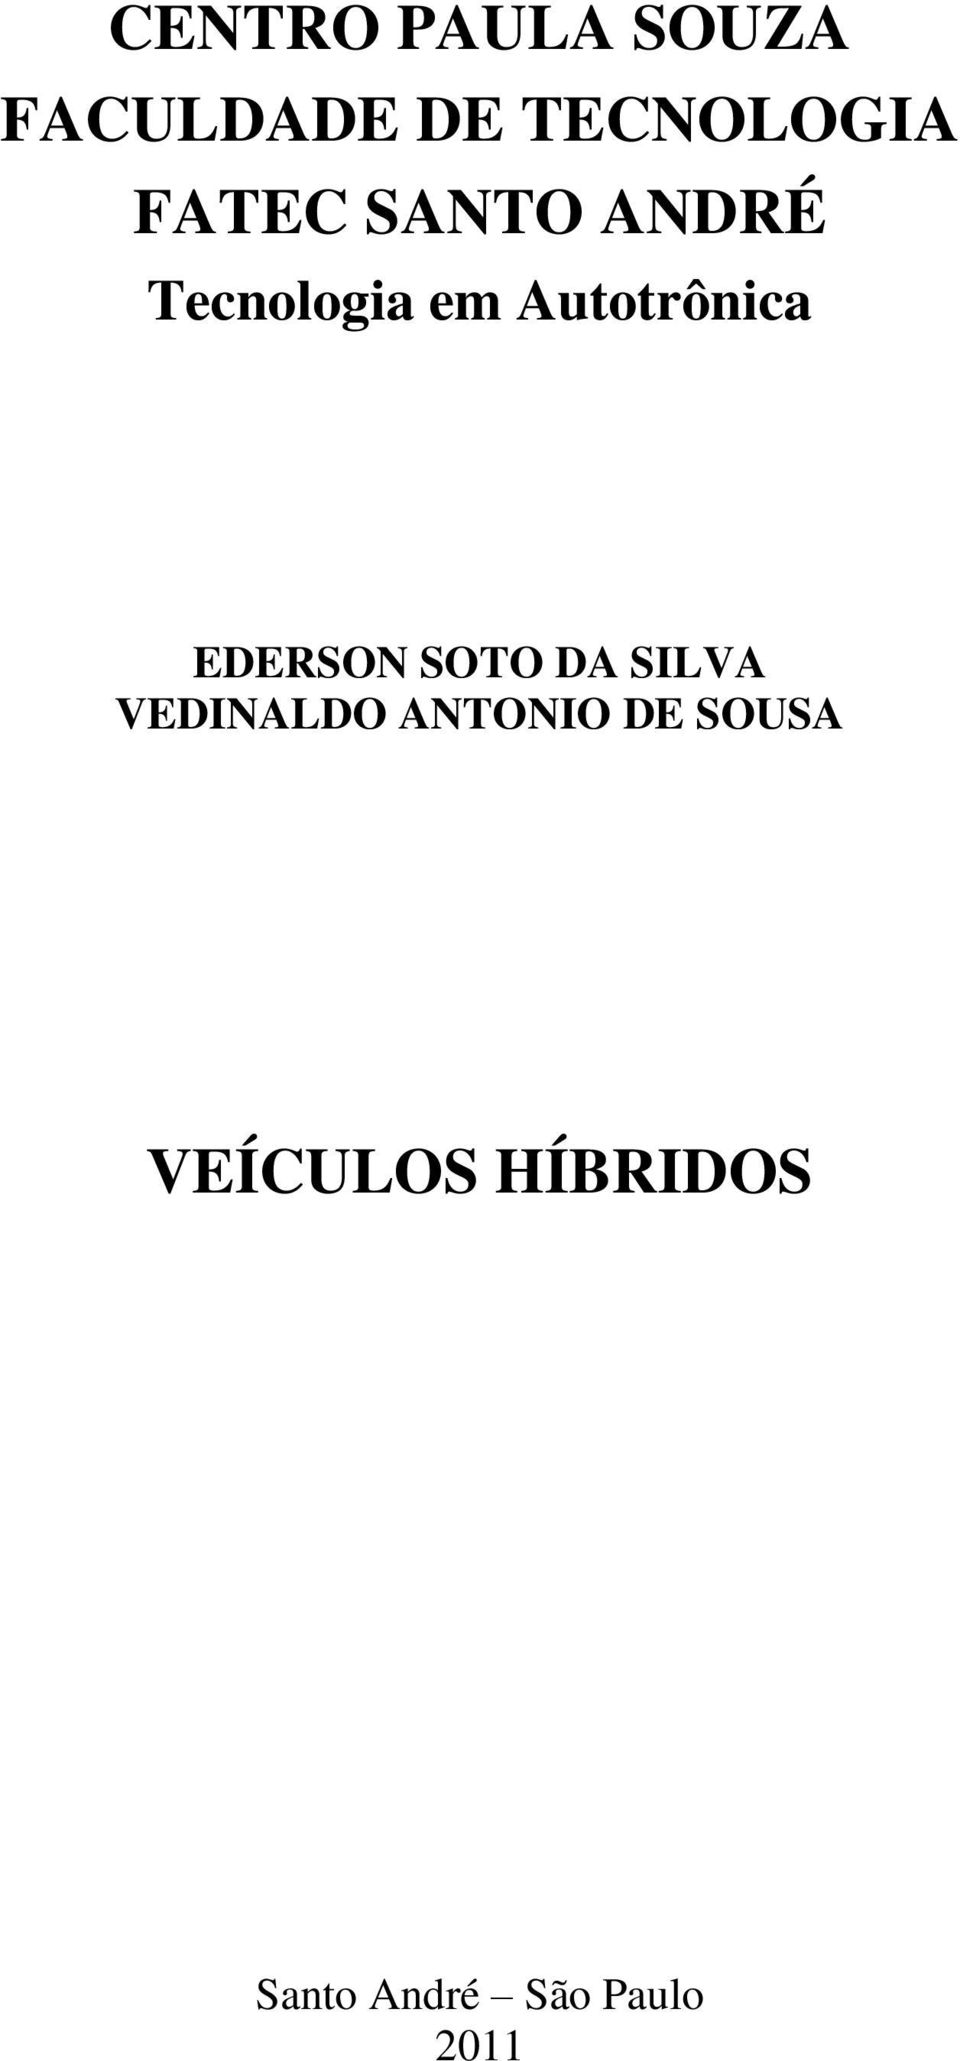 EDERSON SOTO DA SILVA VEDINALDO ANTONIO DE